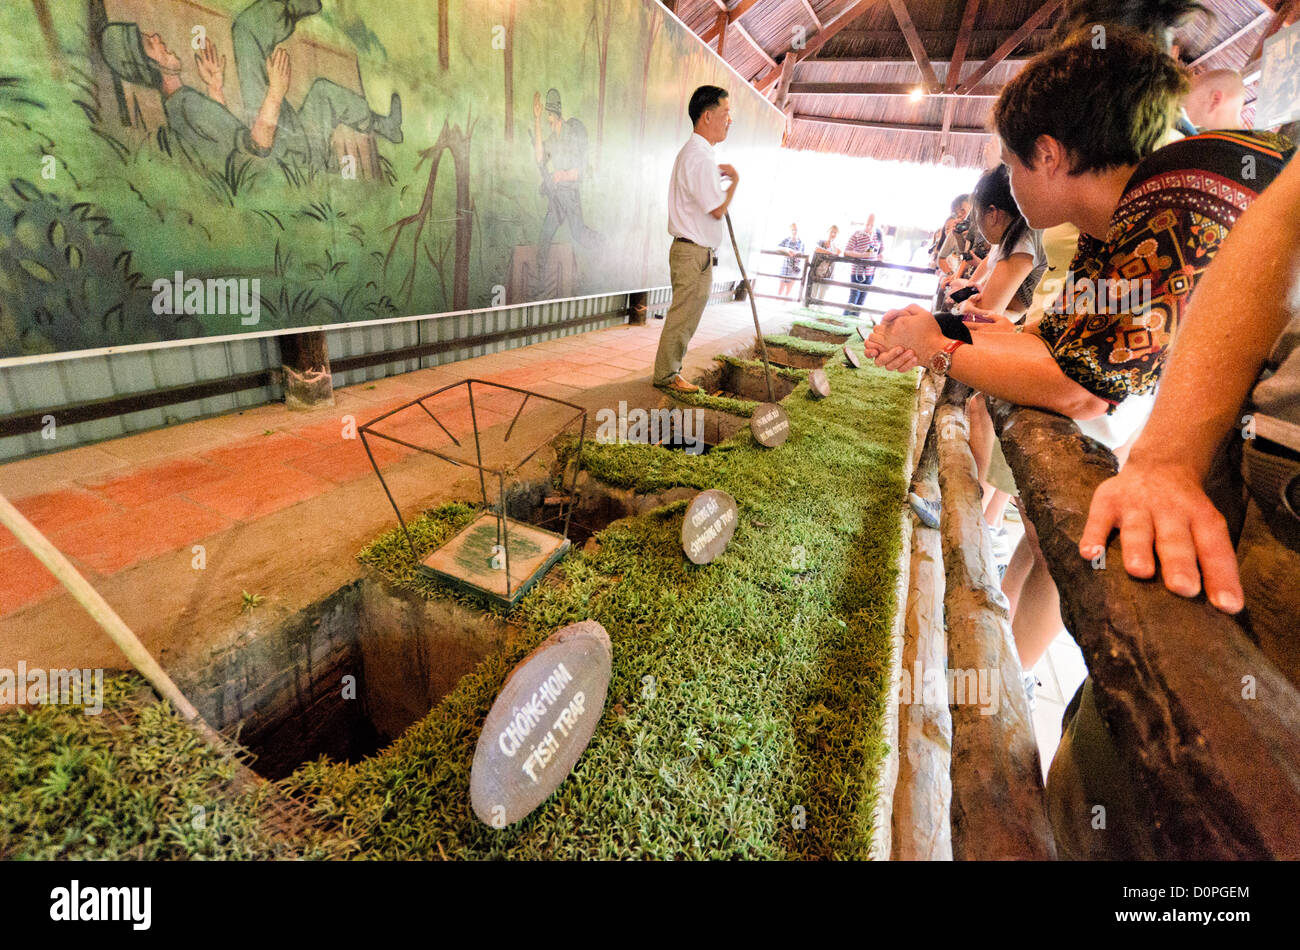 HO CHI MINH Ville, Vietnam - Un guide explique une série de pièges utilisés comme moyens de défense anti-personnel dans la région durant la guerre. Les tunnels de Cu Chi, au nord-ouest de Ho Chi Minh Ville, faisaient partie d'un grand réseau de tunnels souterrains utilisés par les Viet Cong dans la guerre du Vietnam. Une partie de l'original système de tunnel a été conservé comme une attraction touristique où les visiteurs peuvent descendre dans les galeries étroites et voir des expositions sur les précautions de la défense et de la vie quotidienne des Vietnamiens qui y vivaient et combattaient. Banque D'Images